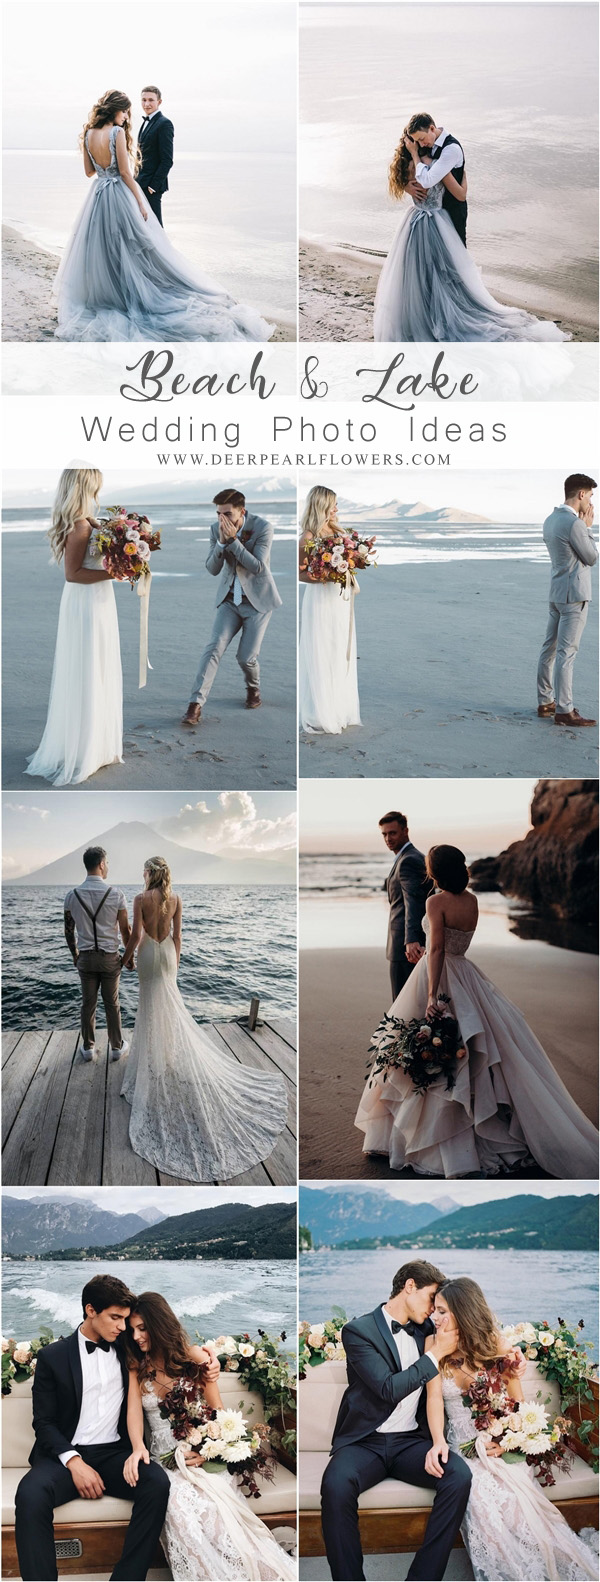 Beach, Ocean and Lake wedding photo ideas 